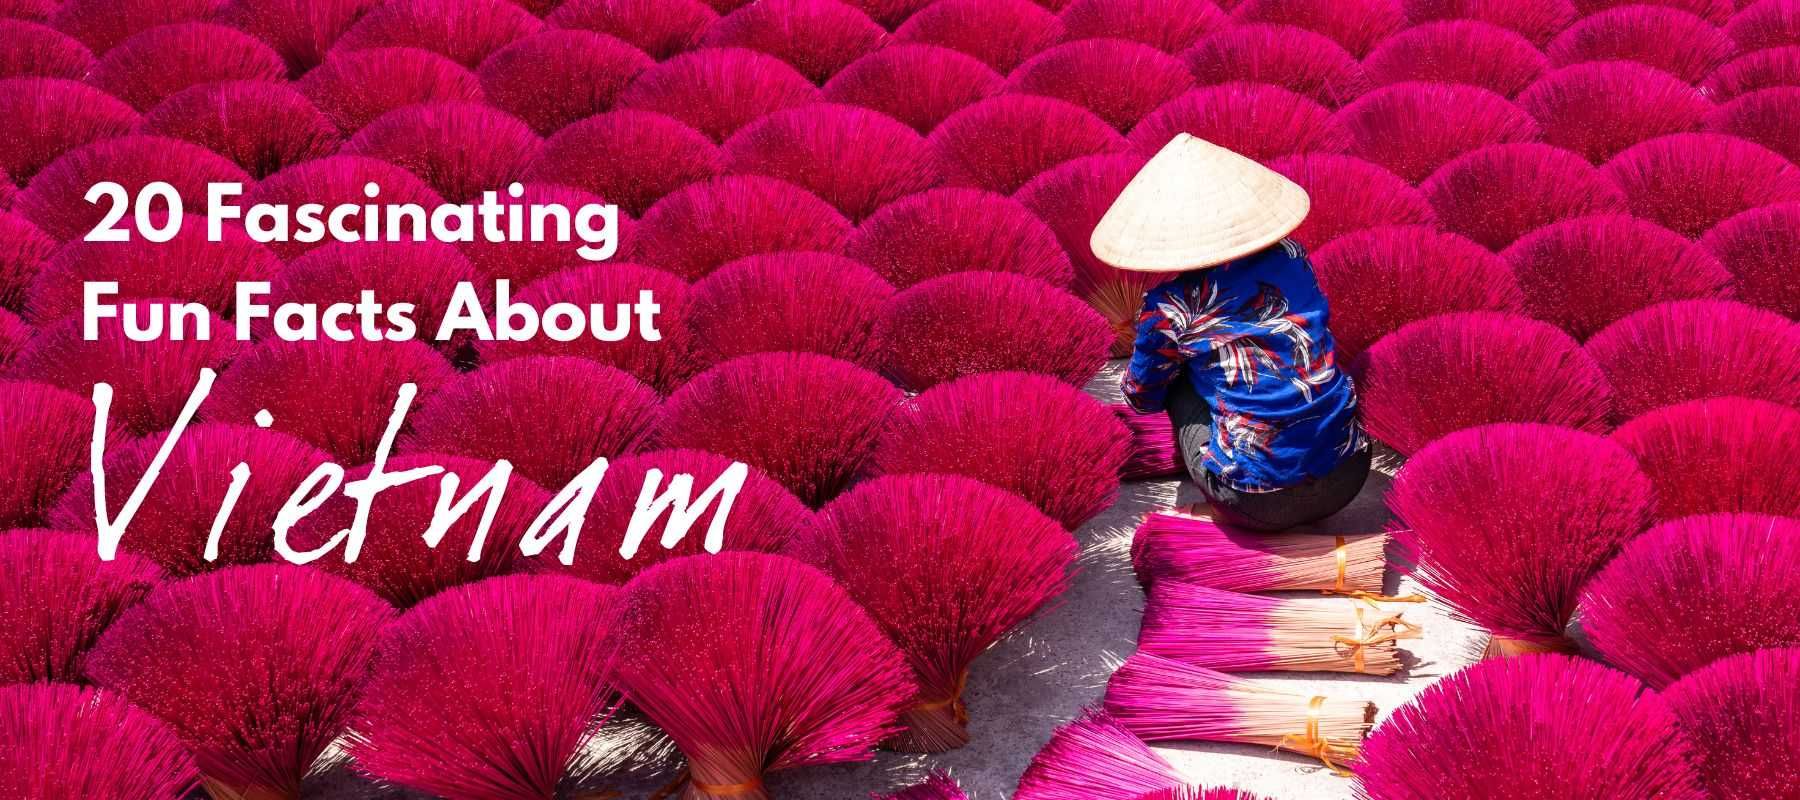 Hanoi Celebrates the Distinctly Vietnamese Beauty of Ao Dai